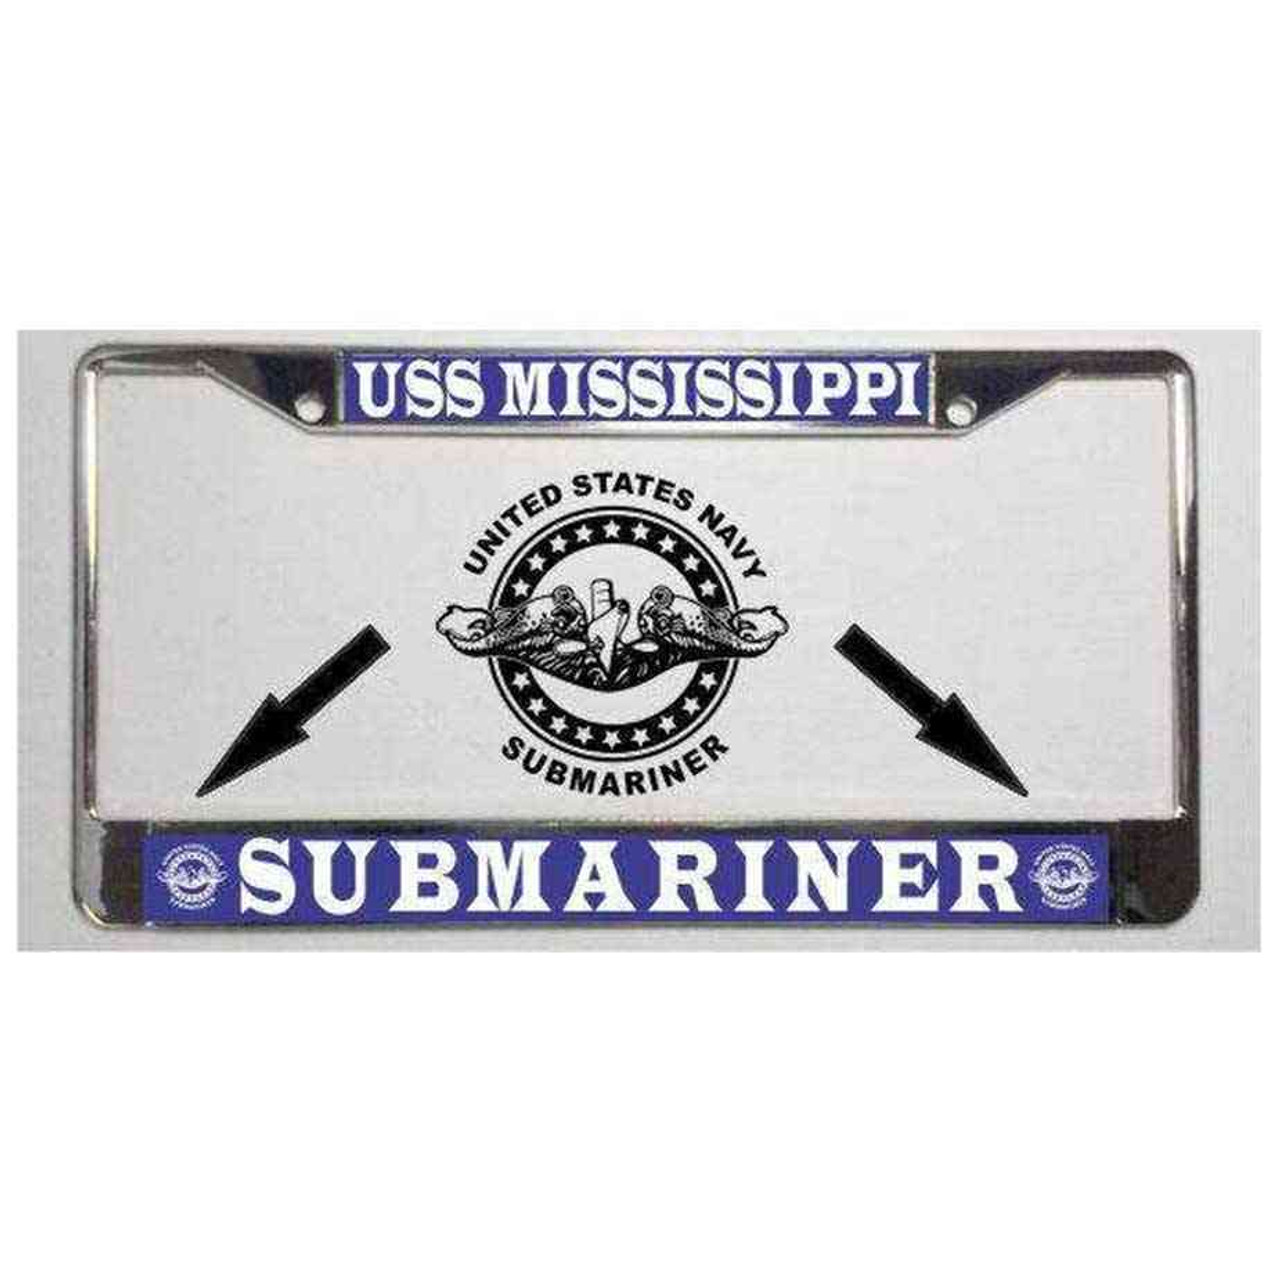 navy submarine badge uss mississippi license plate frame